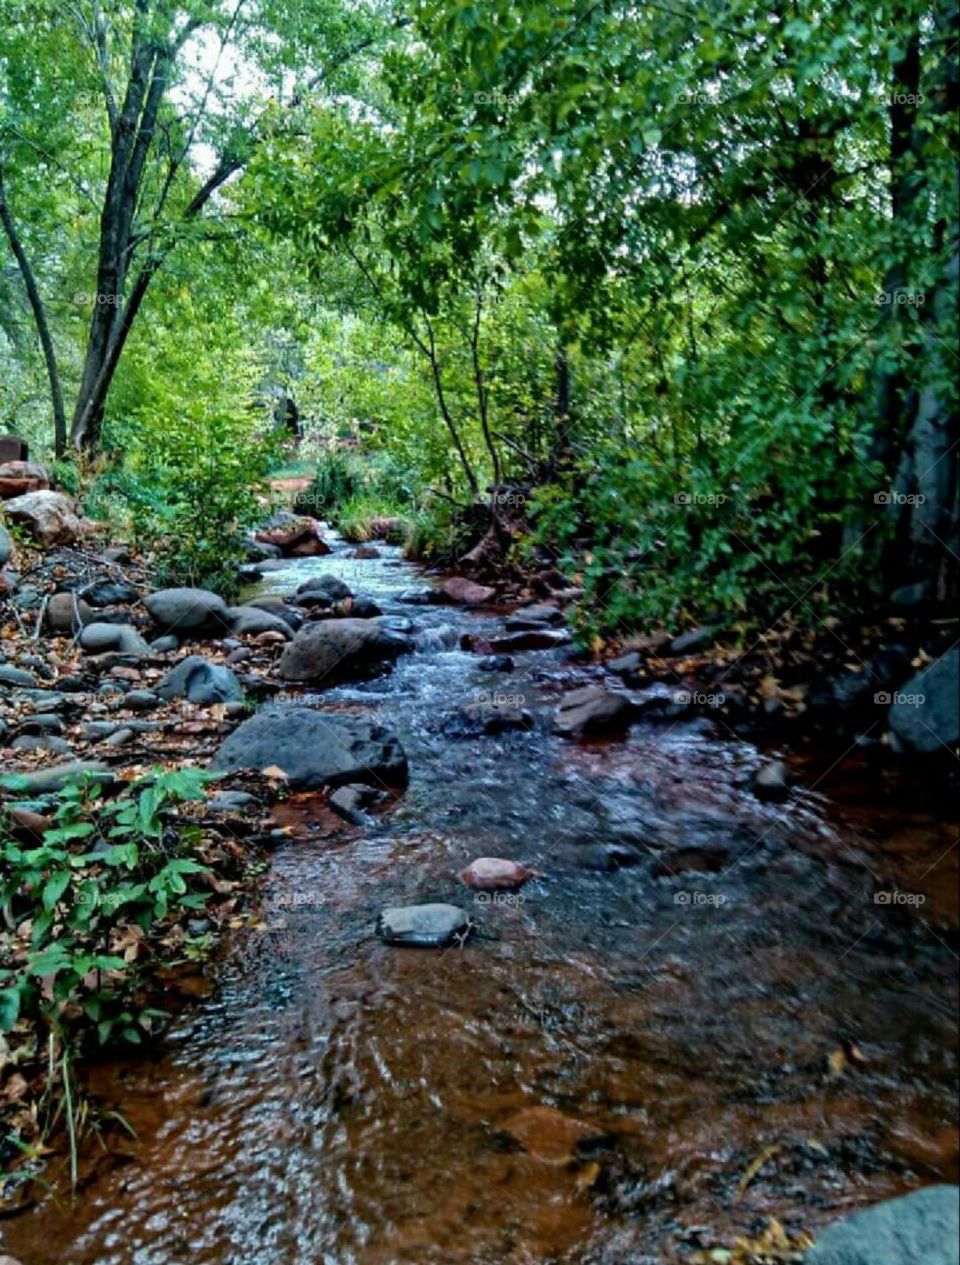 Oak Creek in Sedona, Arizona